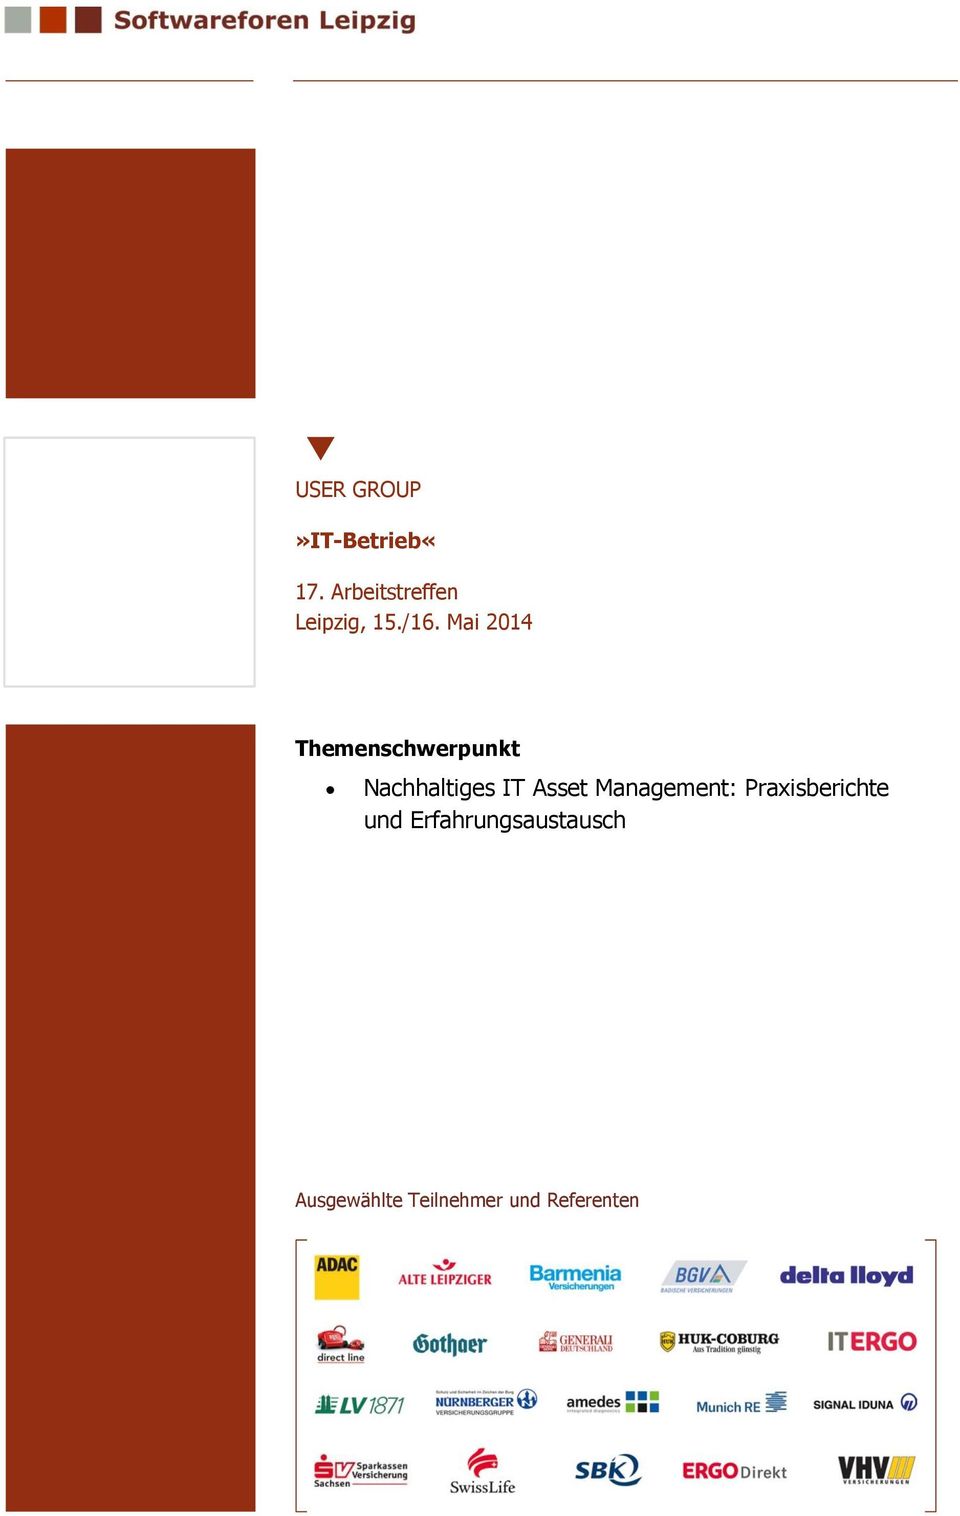 Asset Management: Praxisberichte und